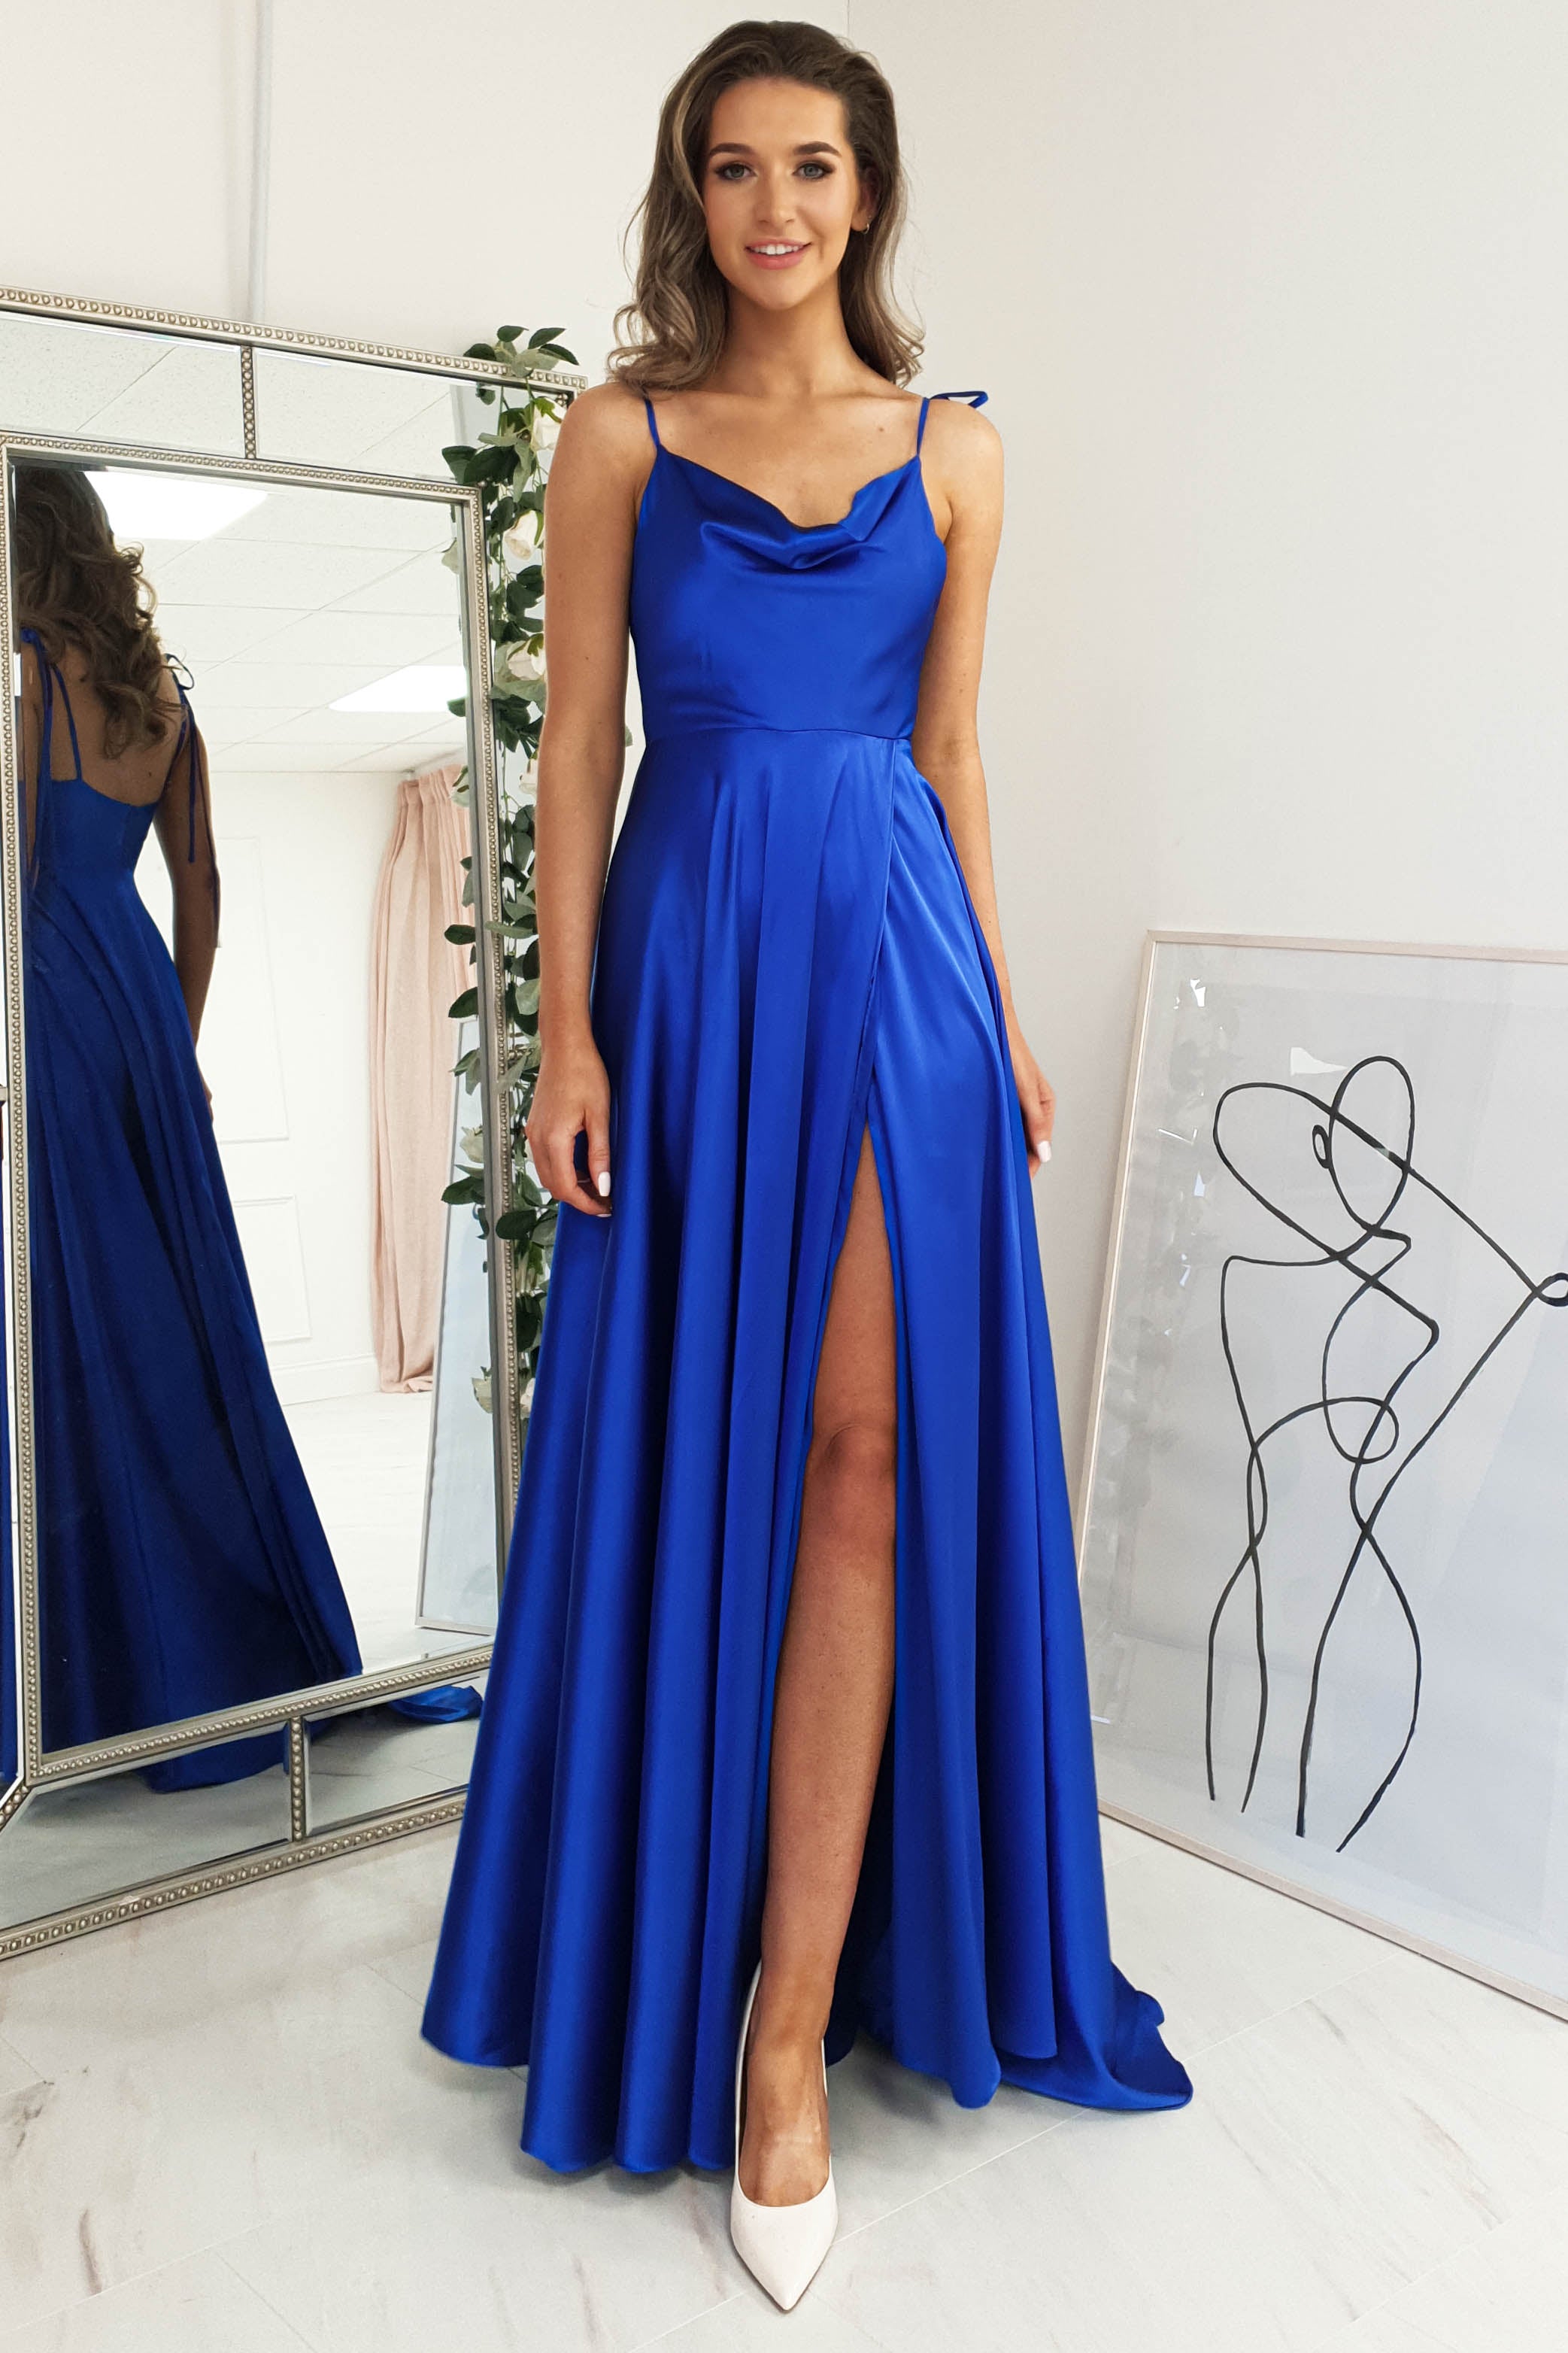 Royal Blue color Gown